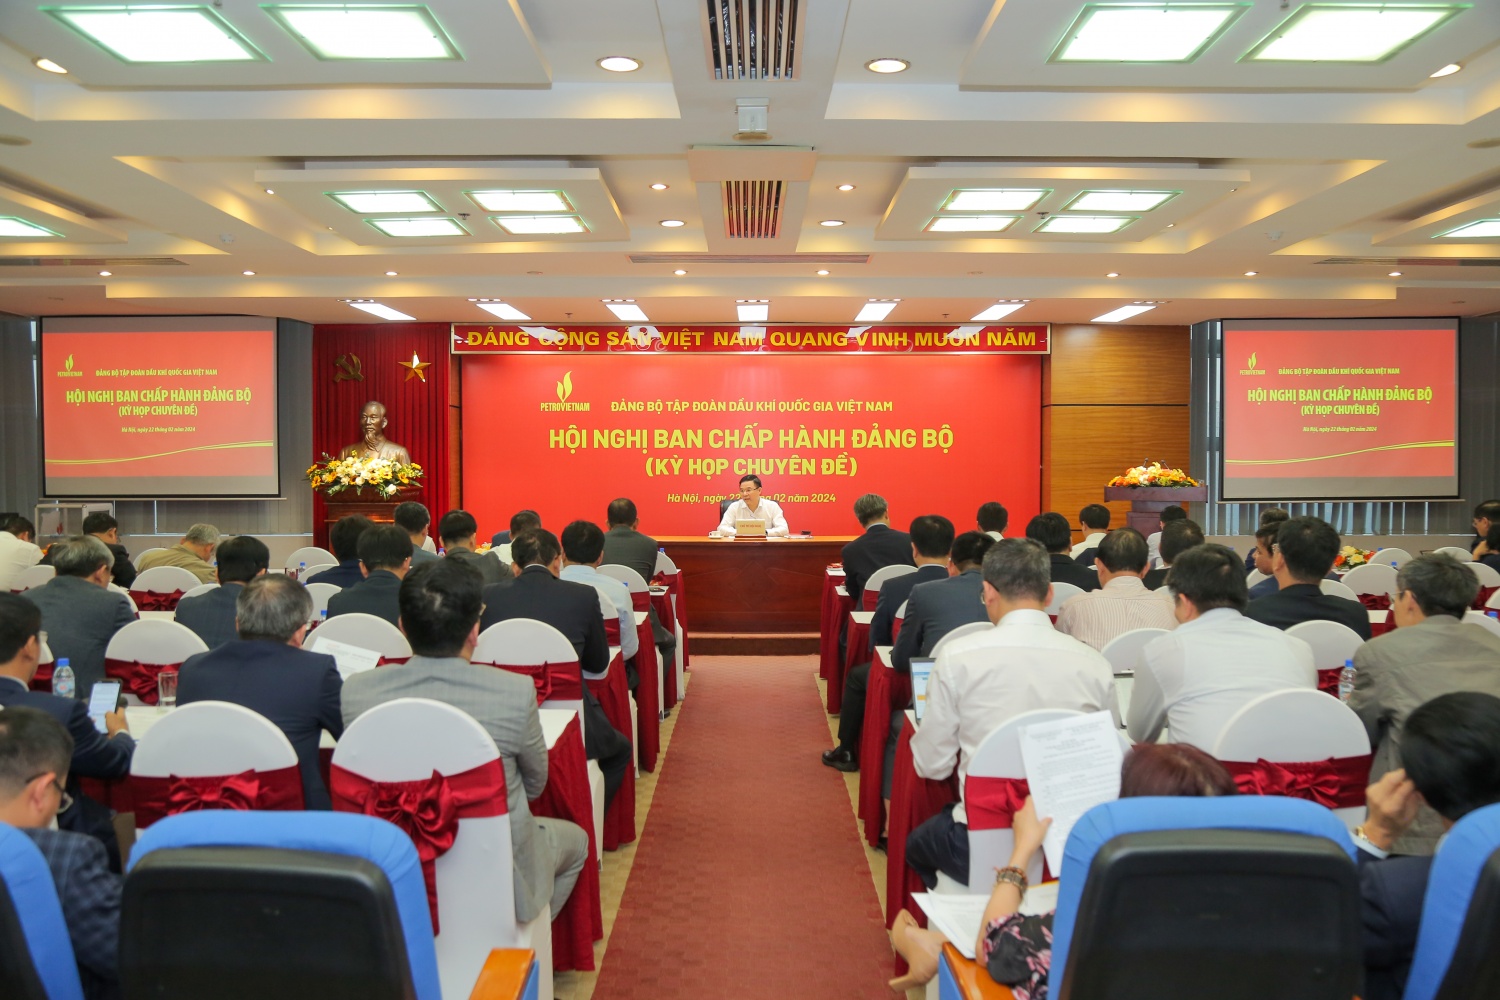 Phát triển Tập đoàn Dầu khí Quốc gia Việt Nam trở thành Tập đoàn Công nghiệp - Năng lượng hàng đầu đất nước